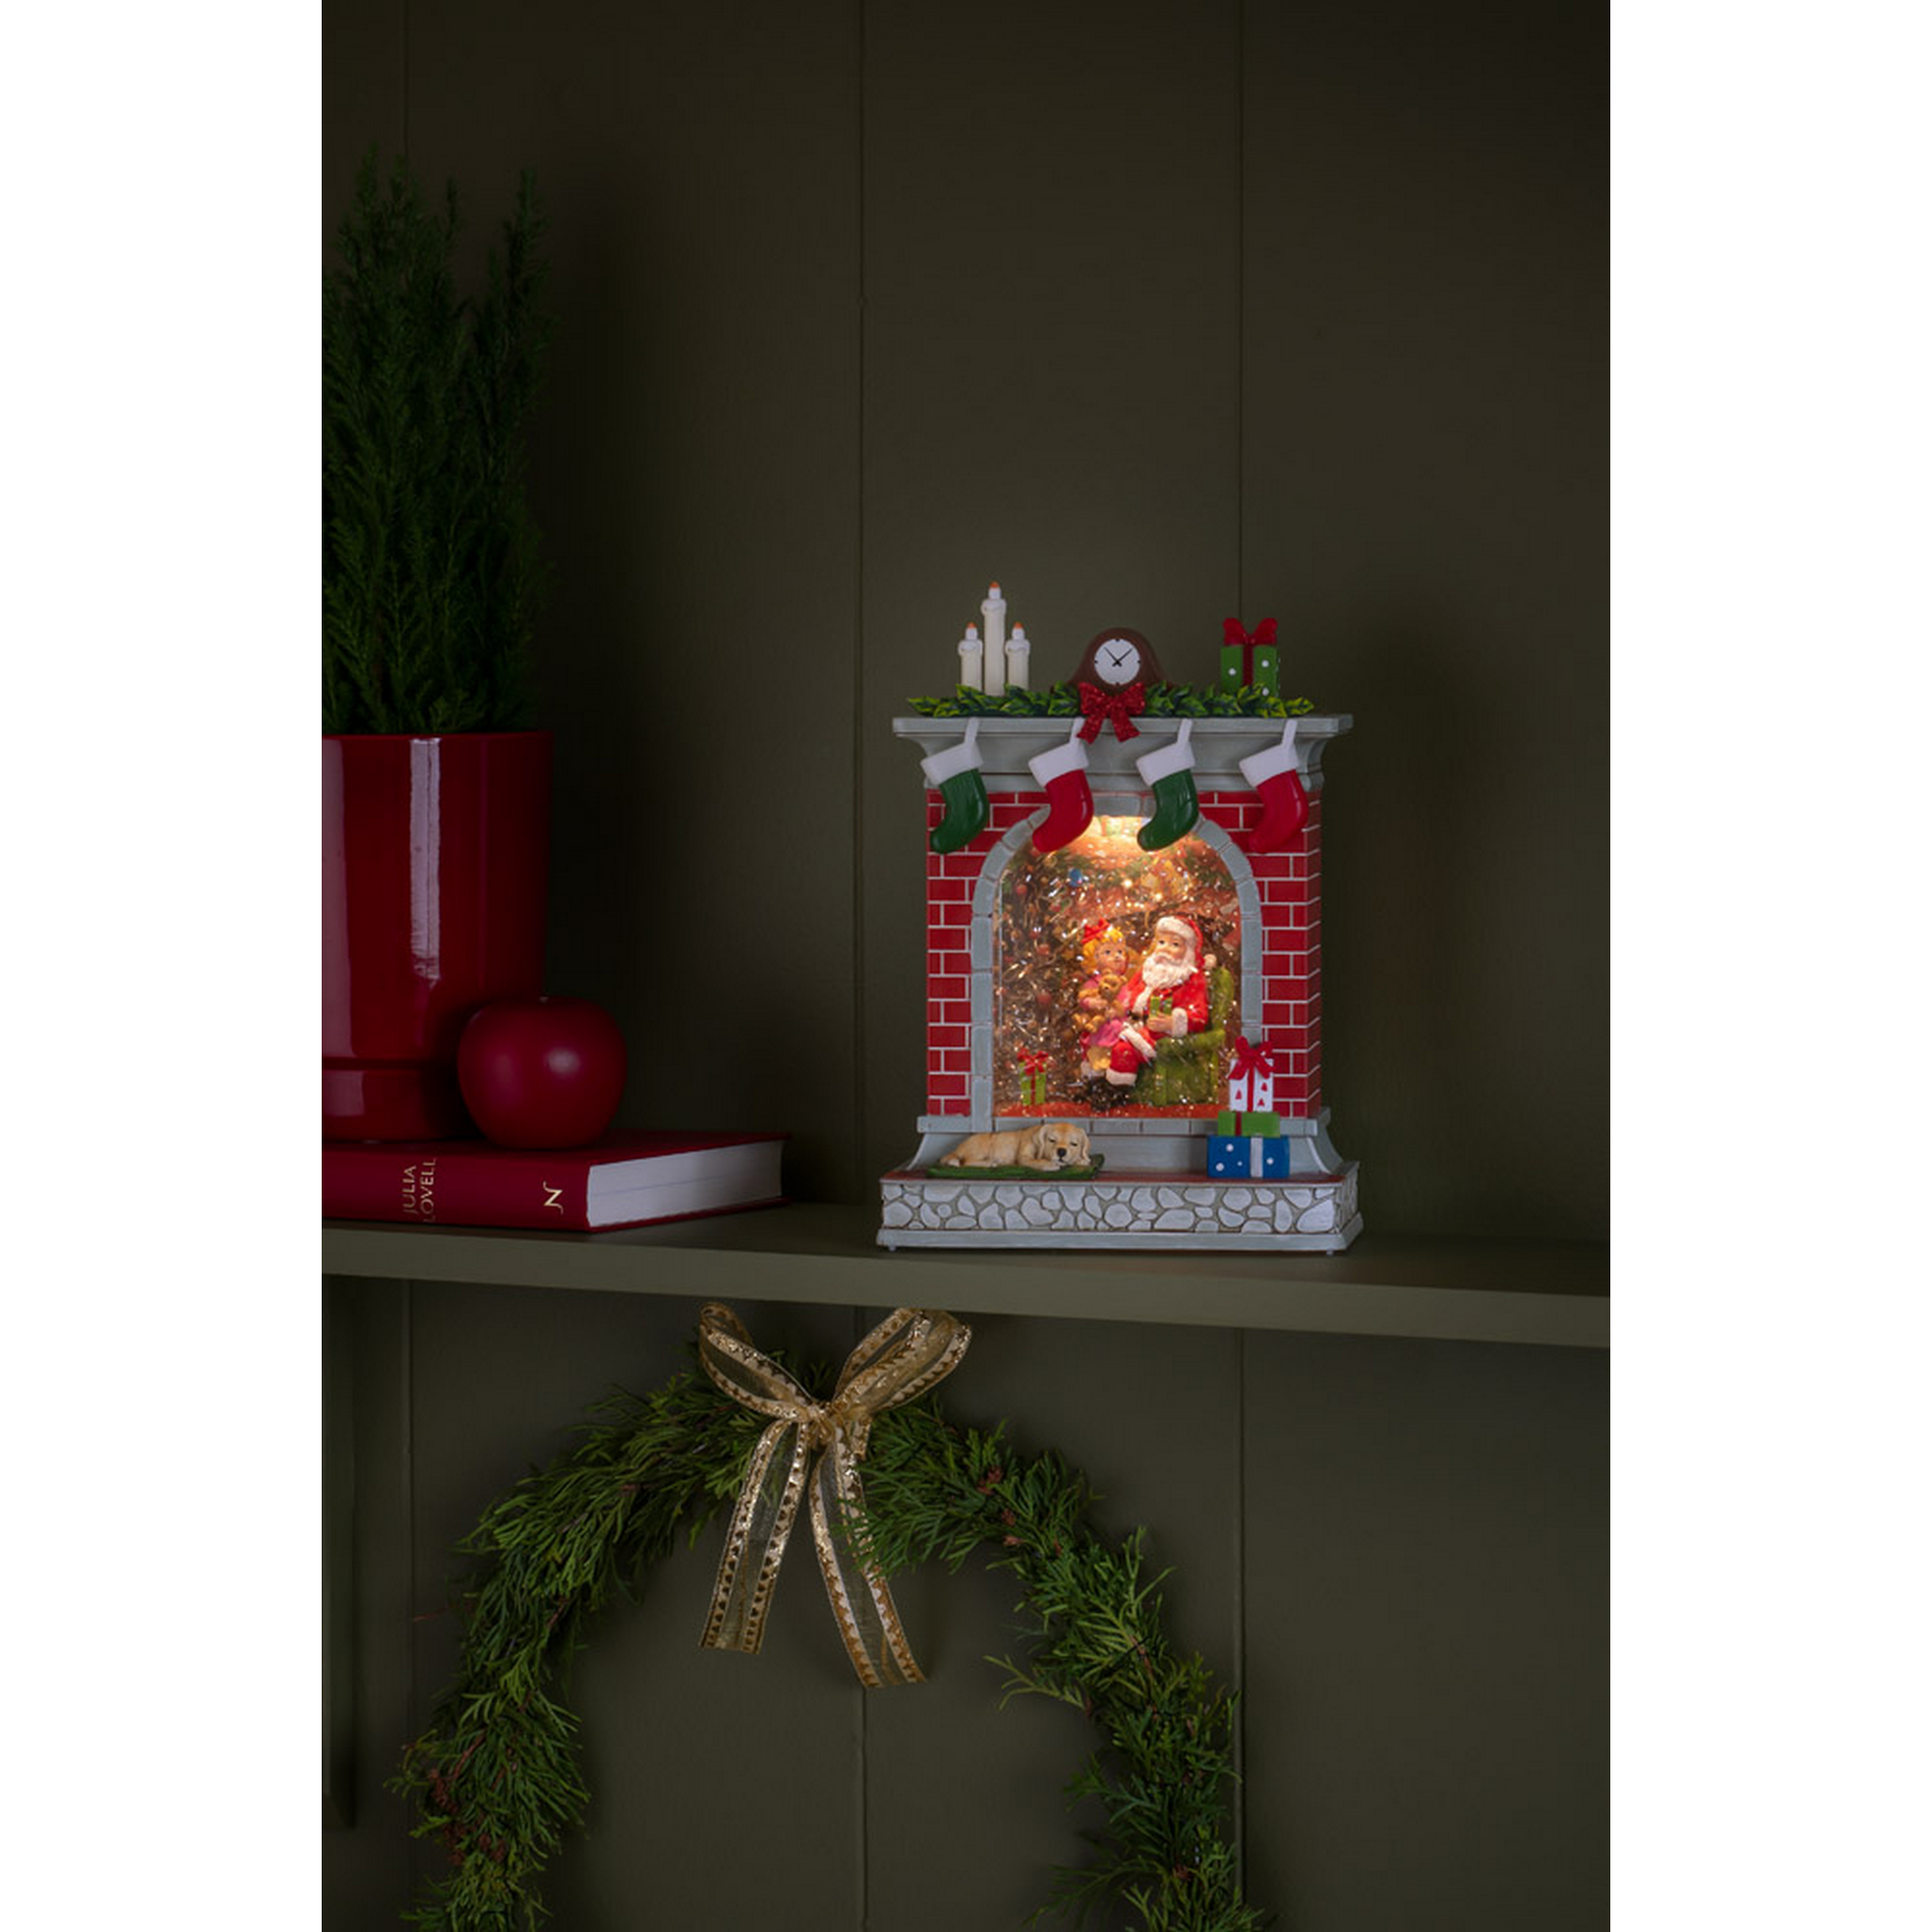 LED-Wasserlaterne 'Kamin mit Weihnachtsmann und Mädchen' 1 LED warmweiß 18 x 10 cm + product picture